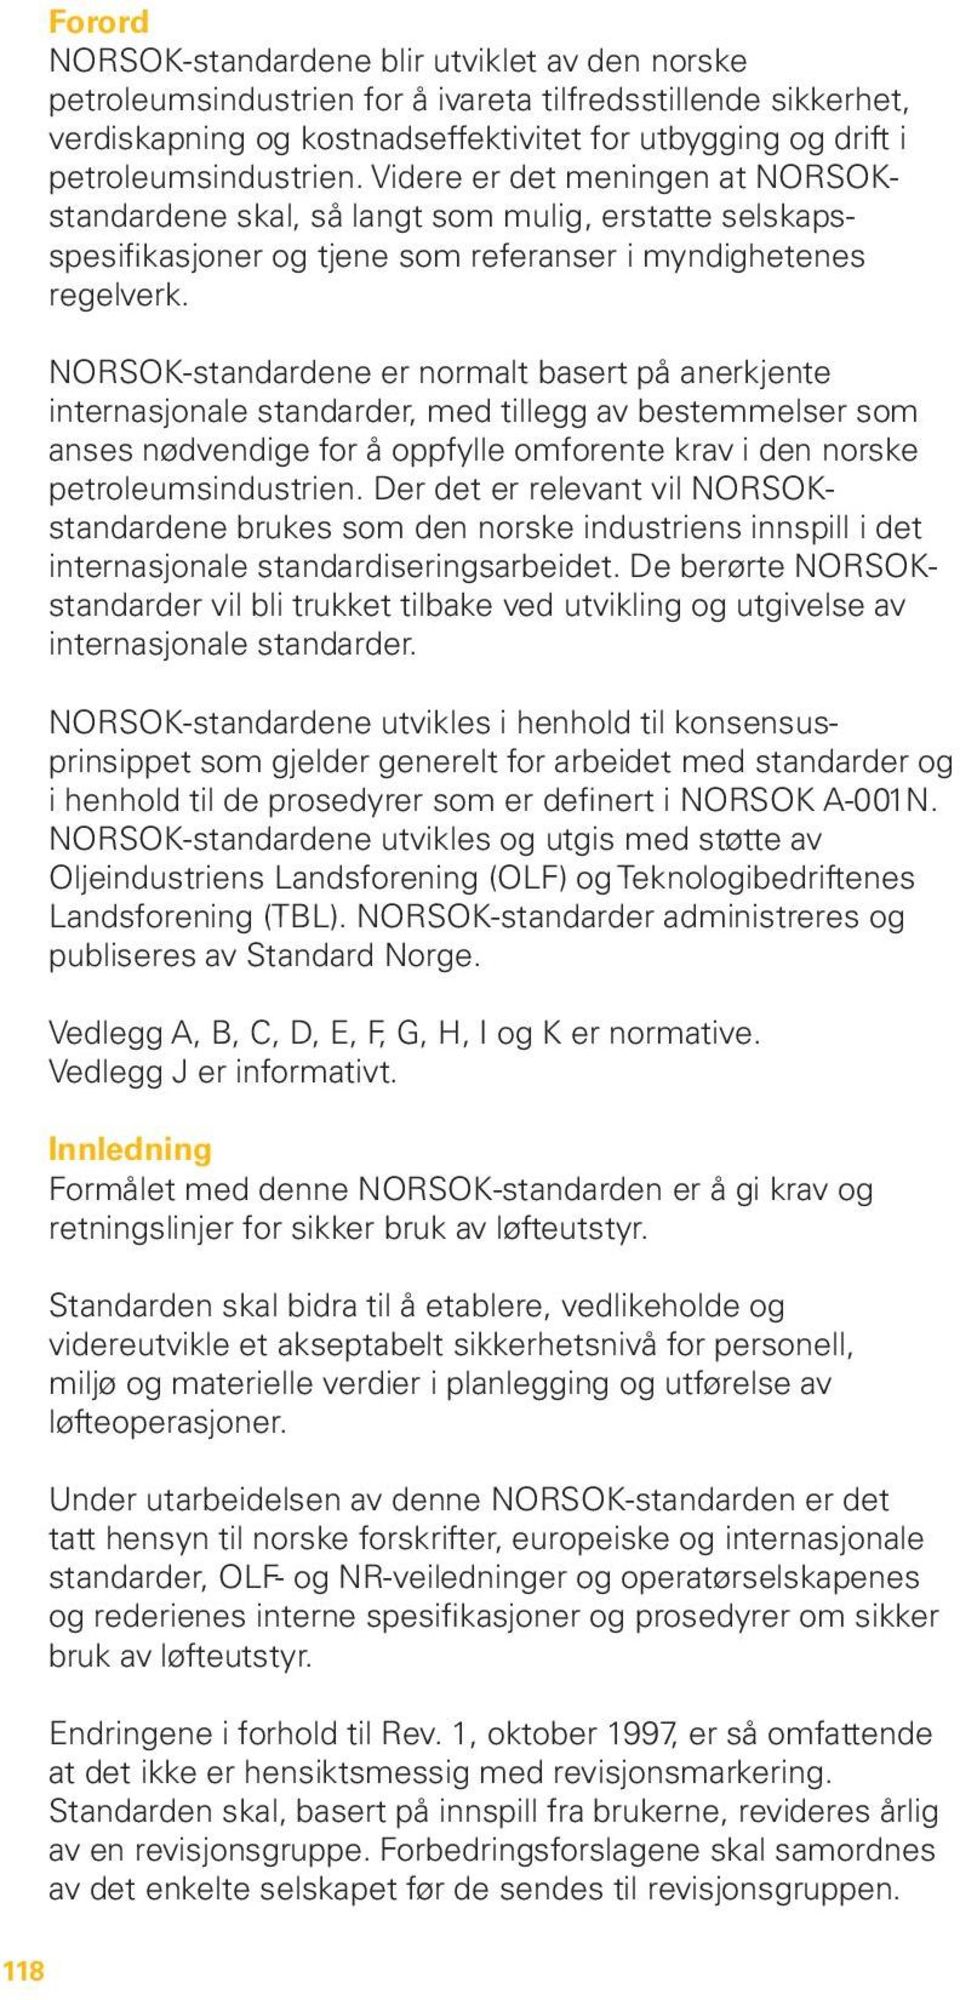 NORSOK-standardene er normalt basert på anerkjente internasjonale standarder, med tillegg av bestemmelser som anses nødvendige for å oppfylle omforente krav i den norske petroleumsindustrien.